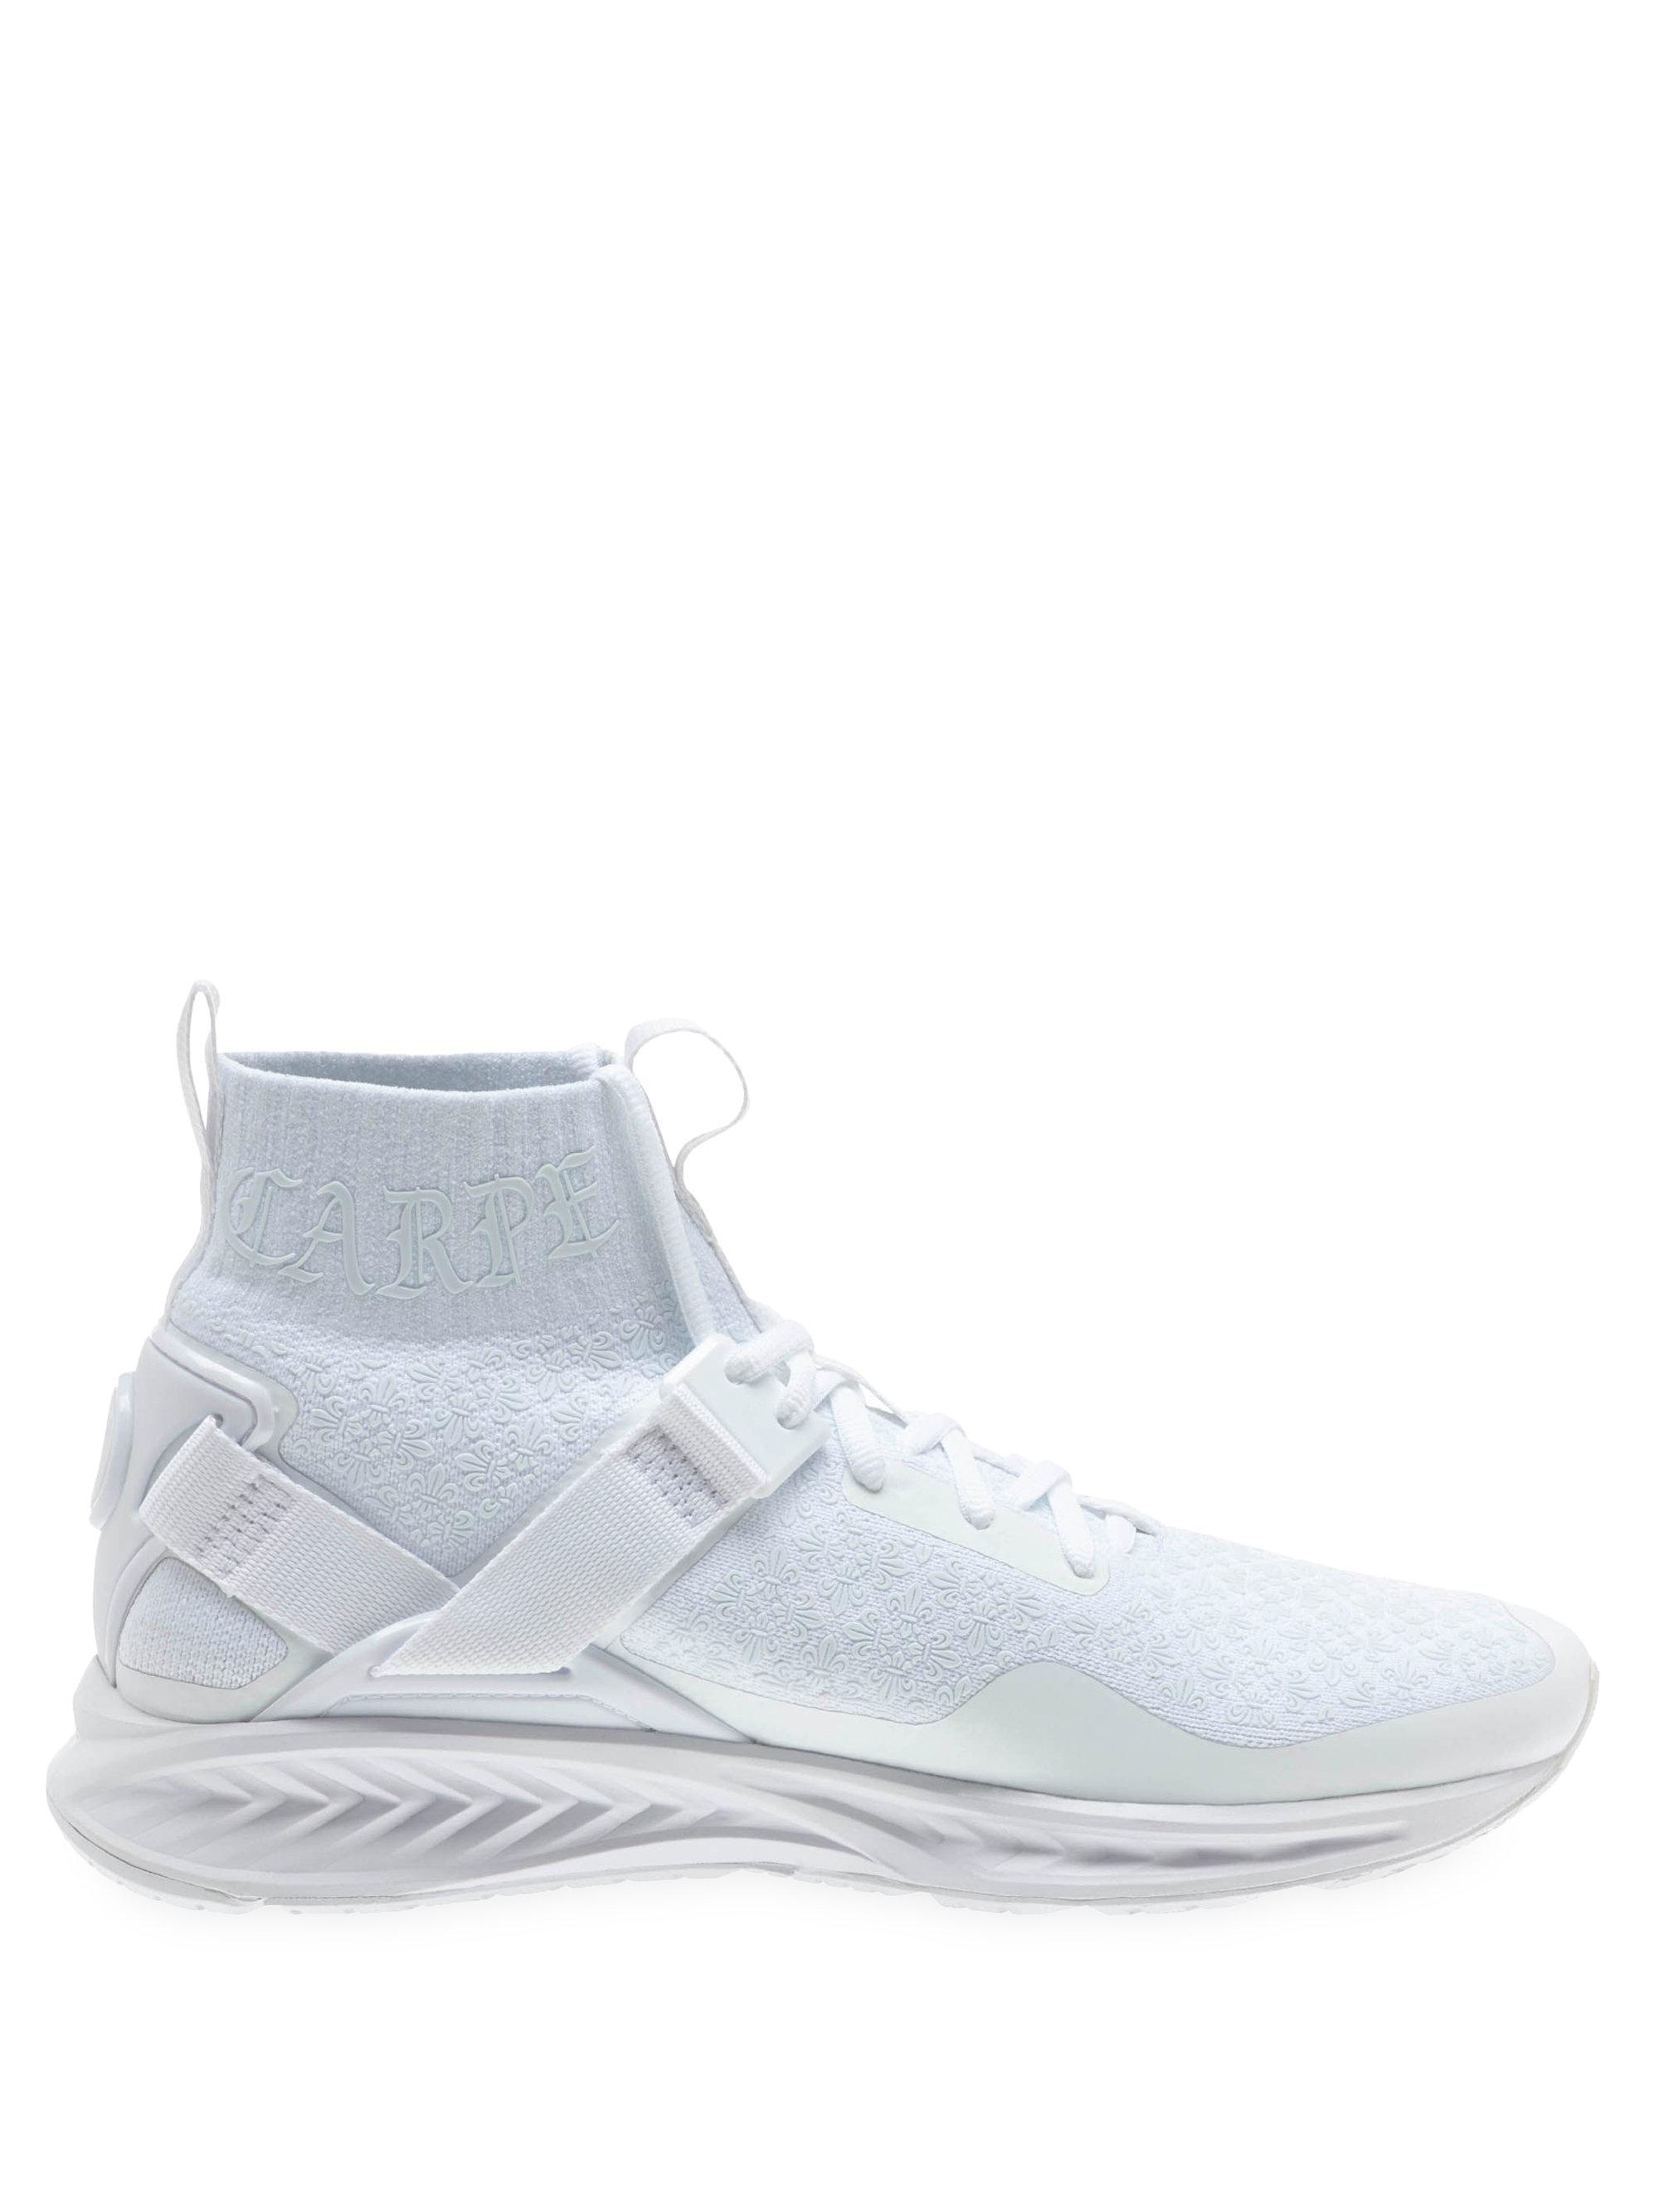 PUMA X En Noir Ignite Evoknit Sock Sneakers in White - Lyst